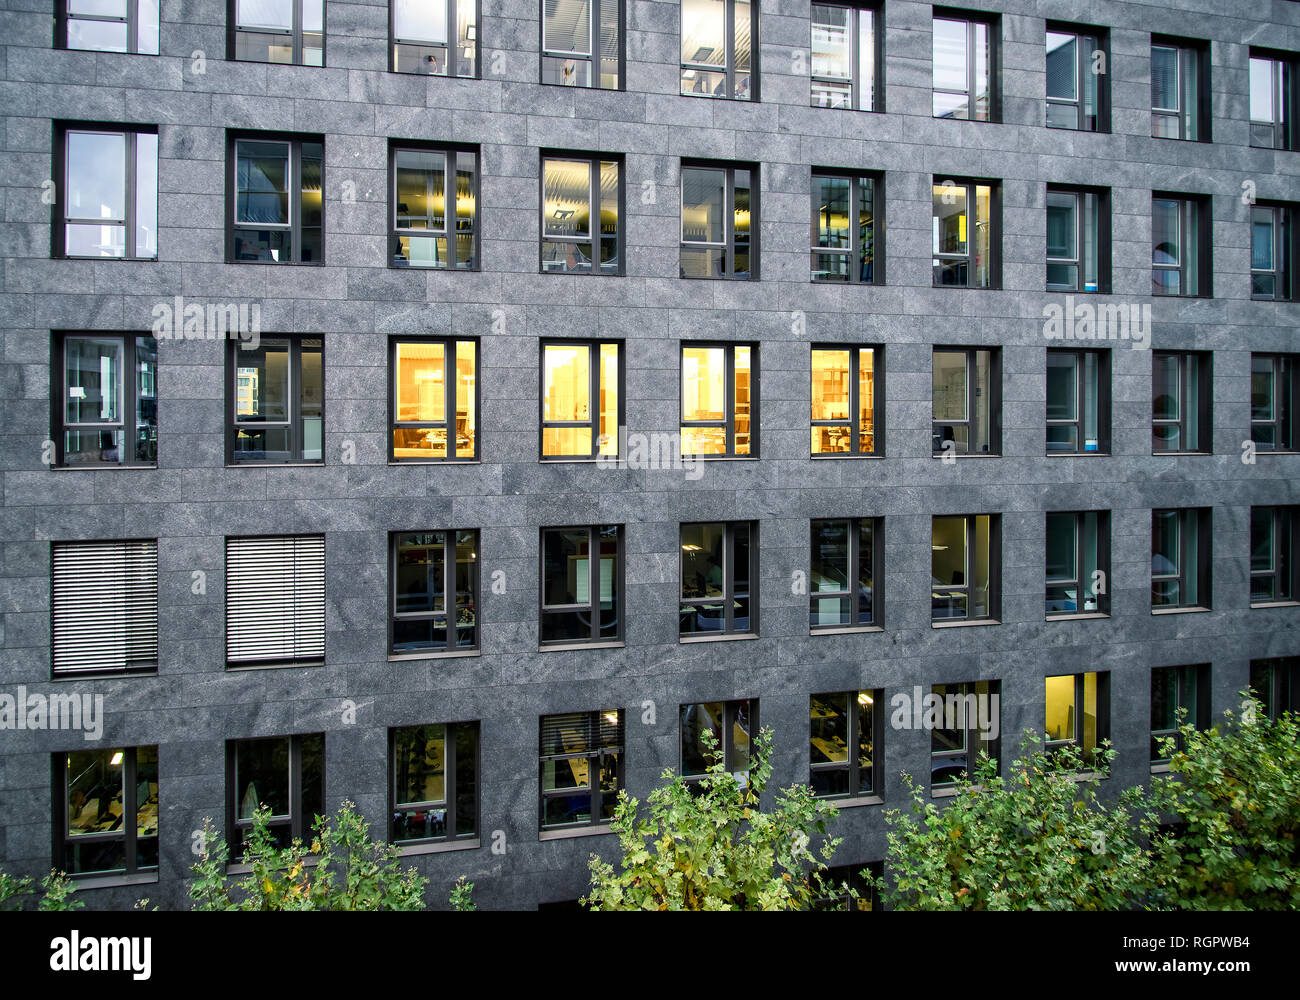 Fachada de un edificio de oficinas con algunas ventanas iluminadas Foto de stock